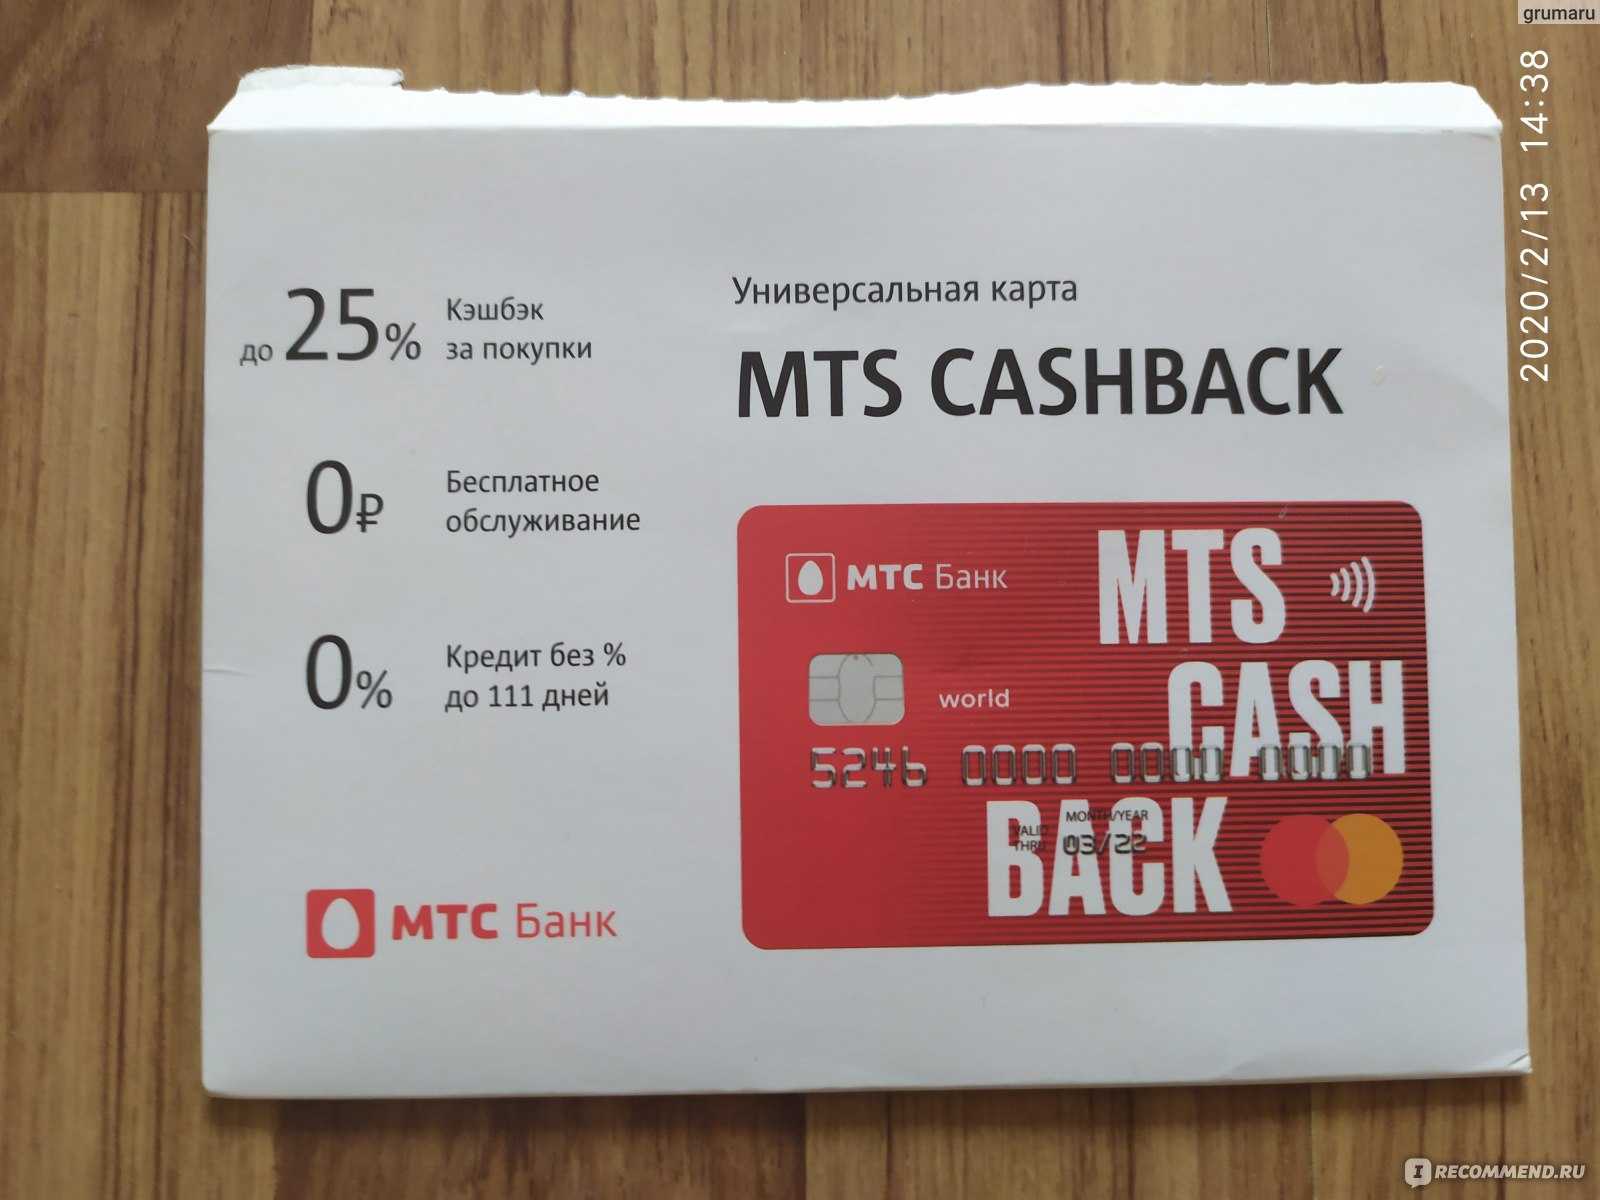 Карта "мтс cashback" - условия + отзывы + в чем подвох? - polezner